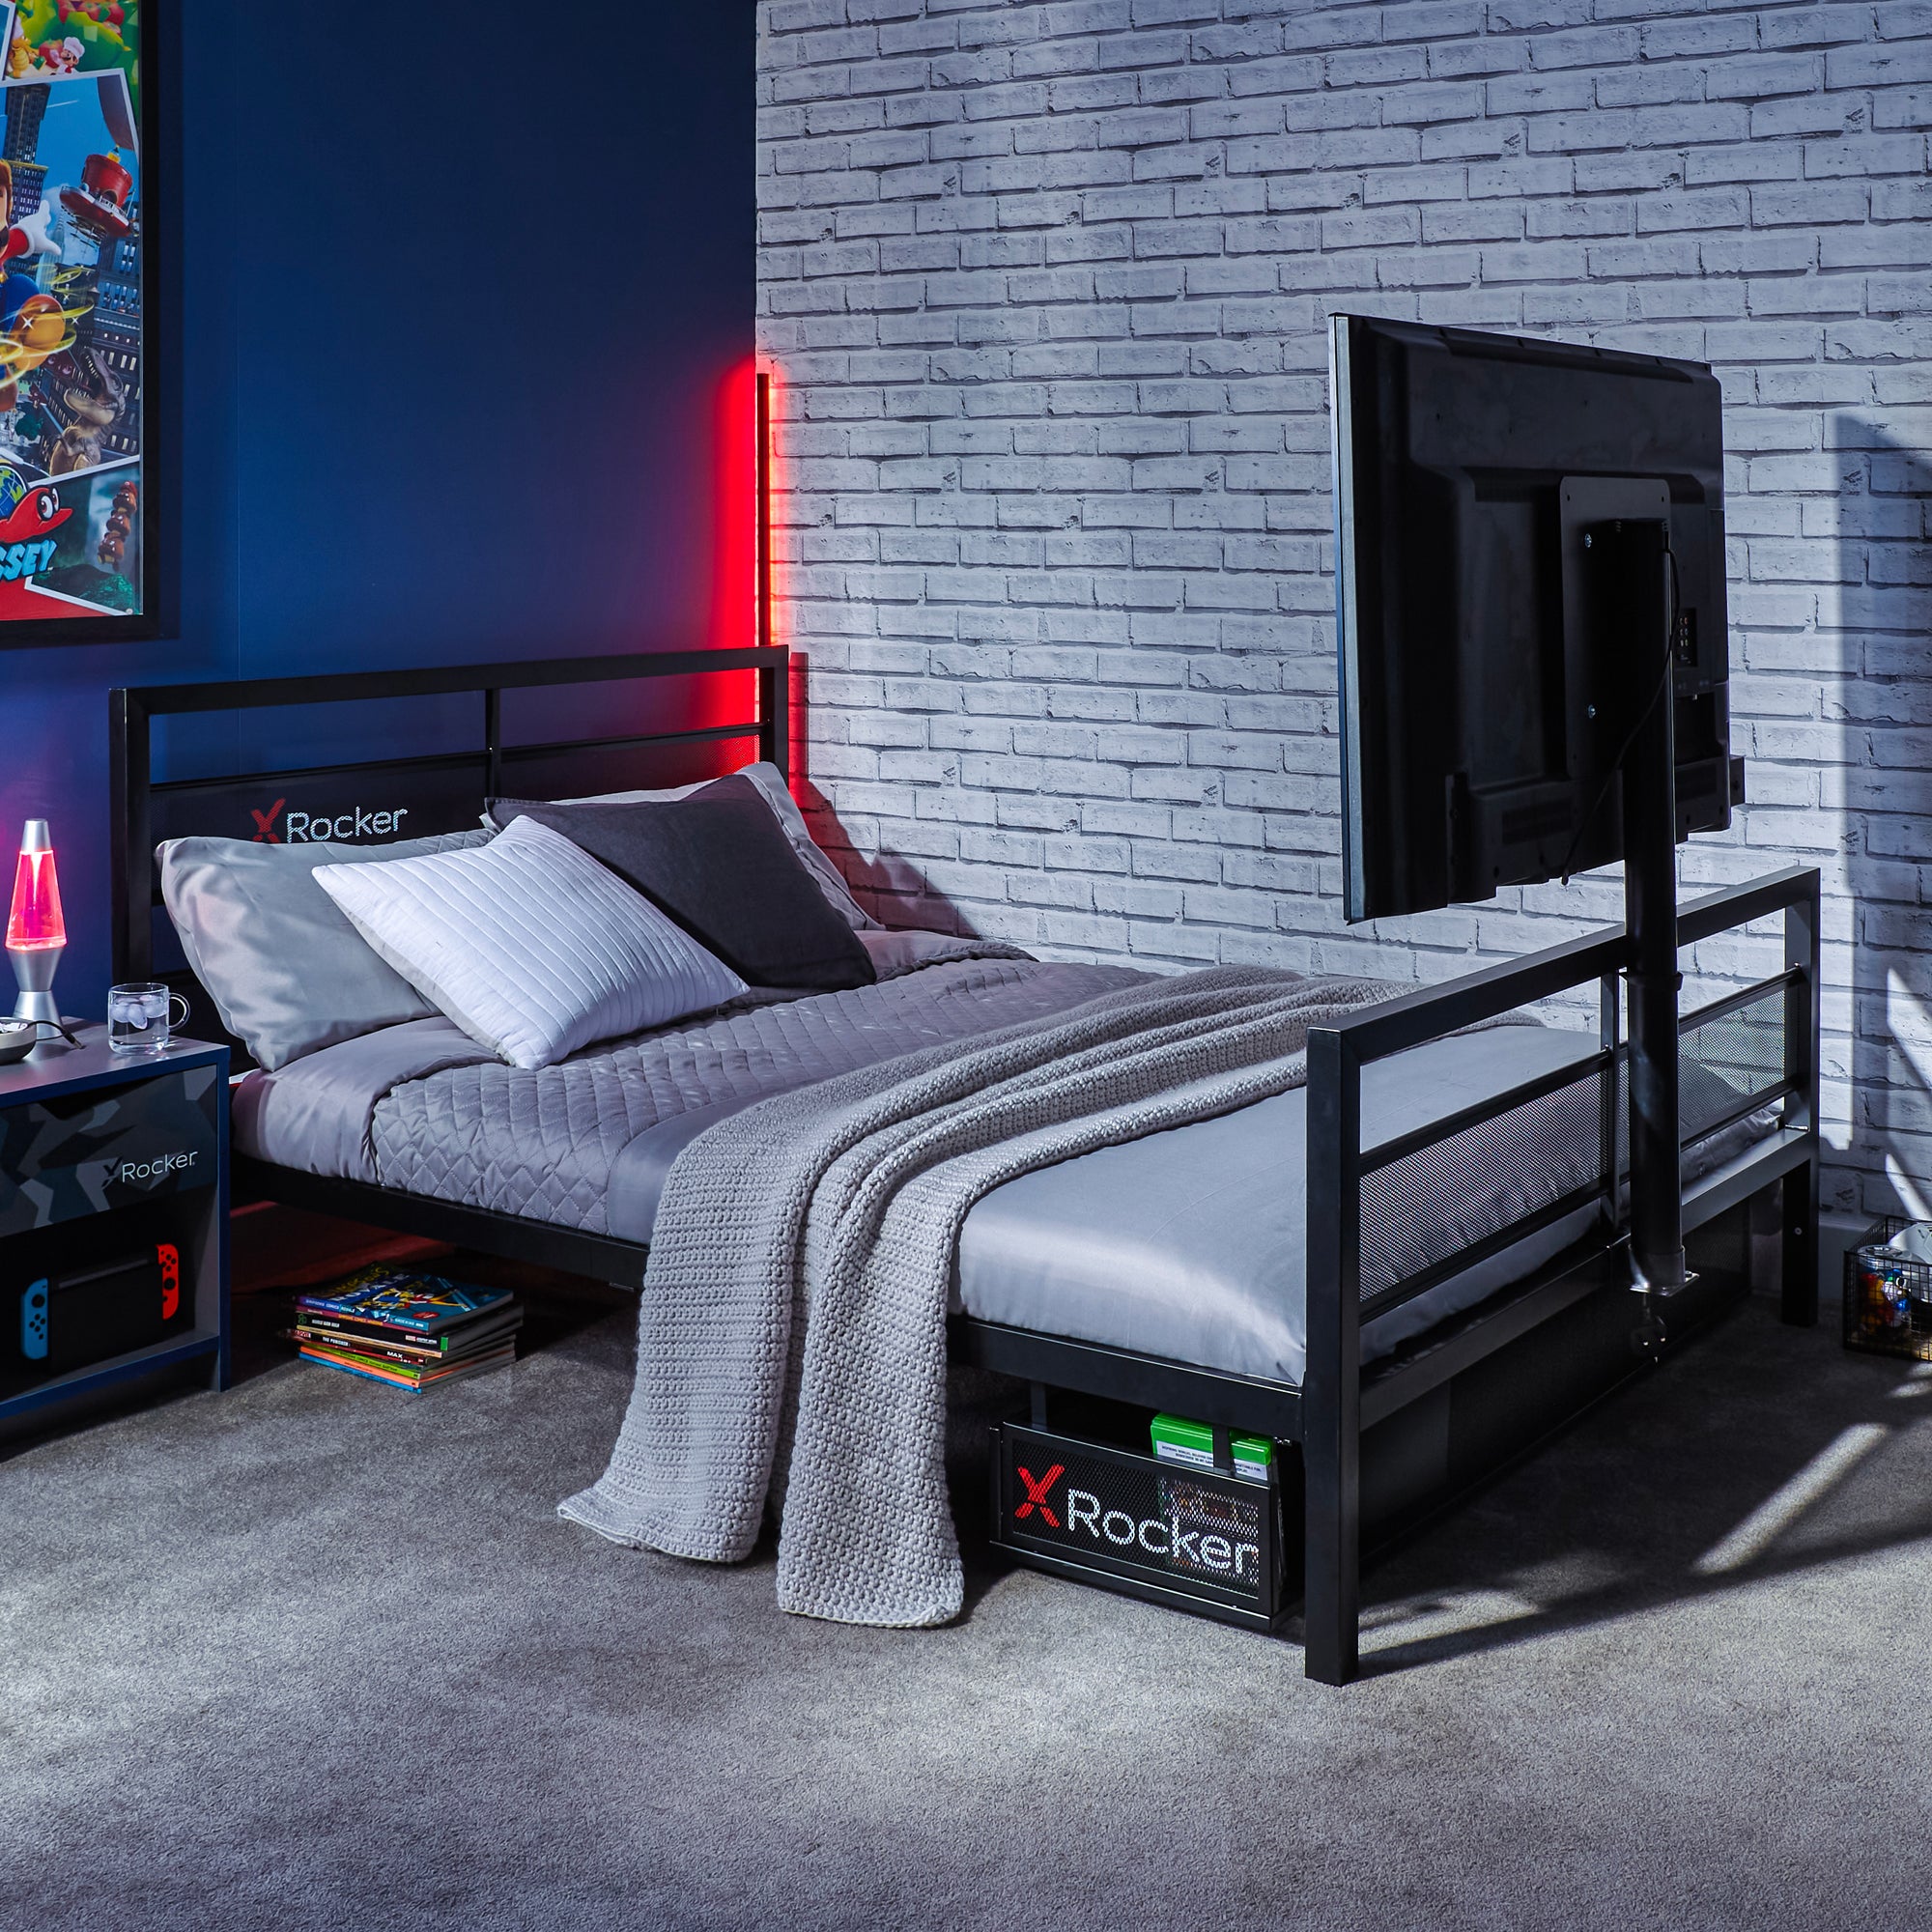 X Rocker Basecamp Gaming Bed Frame with TV VESA Mount